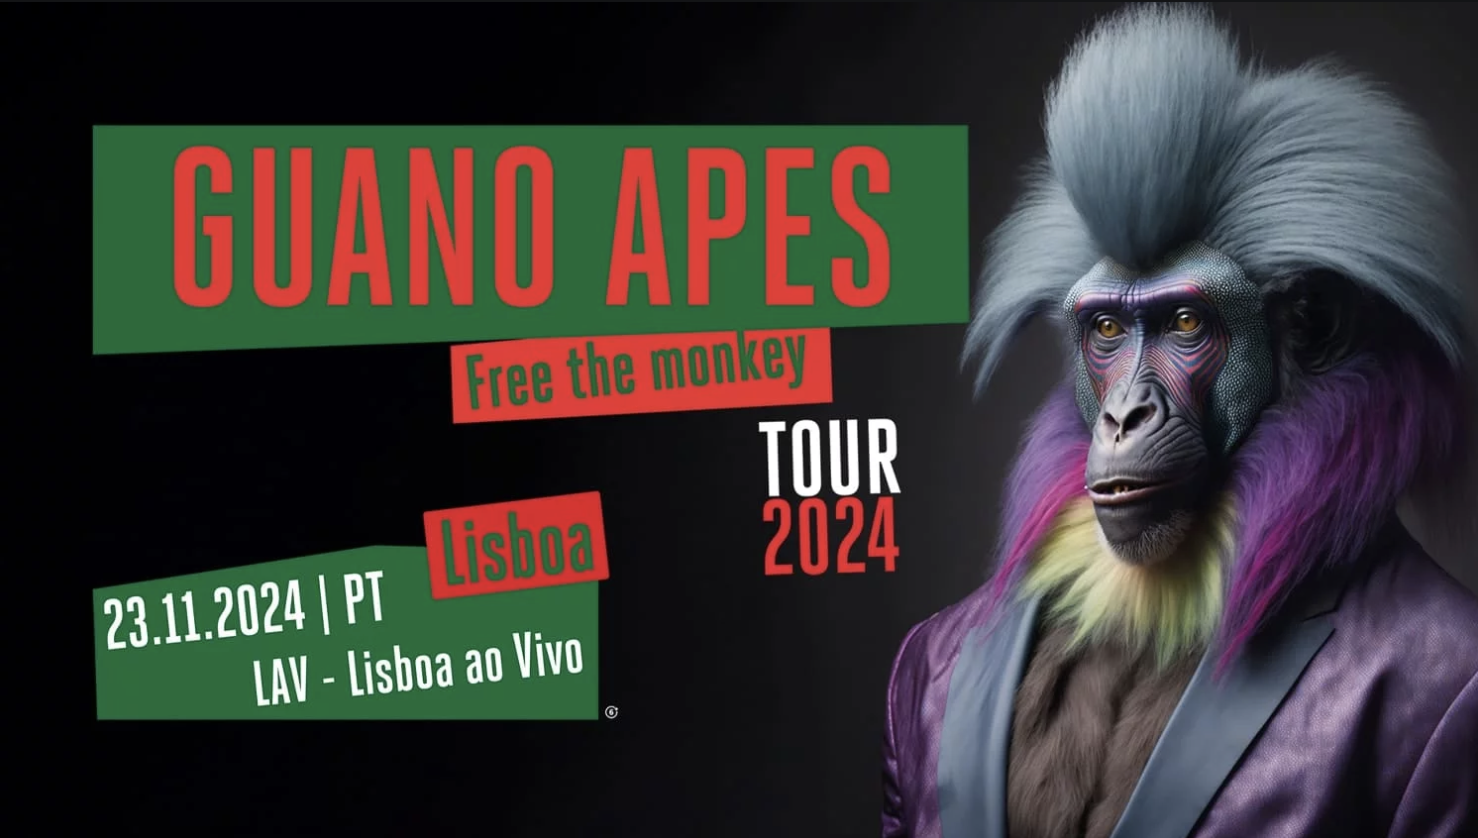 Guano Apes voltam a Portugal com "Free The Monkey Tour", em 2024